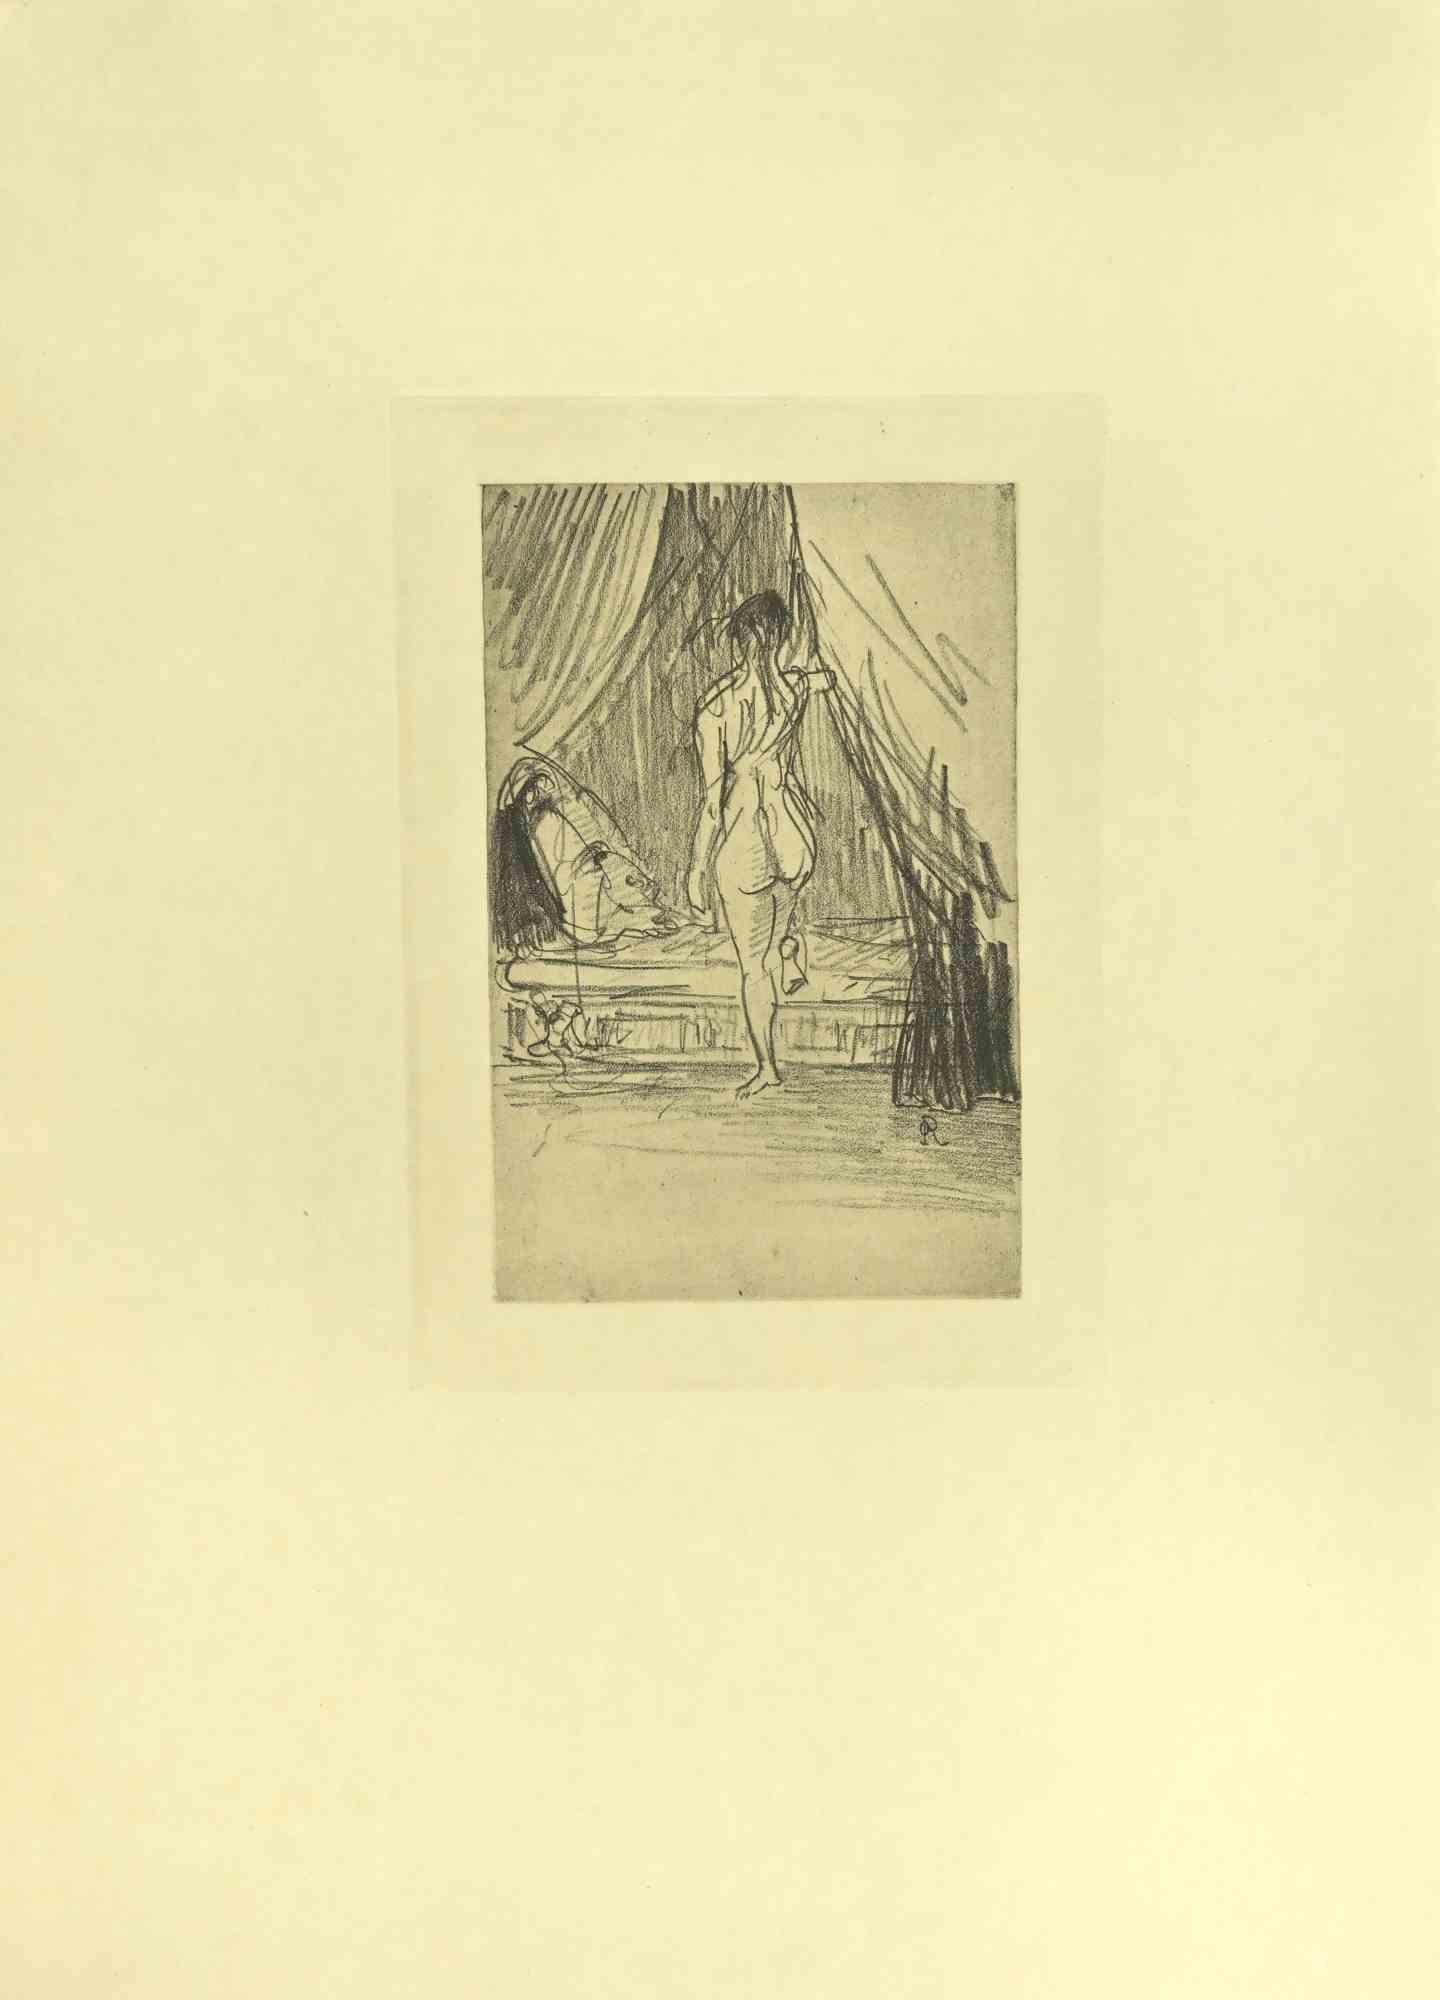 Die Illustration aus der Serie "Les Fleurs du Mal" ist eine Radierung nach Odilon Redon und wurde 1923 von Henri Felury veröffentlicht.

Mit Monogrammen auf dem Teller.

Gute Bedingungen.

Odilon Redon  (Bordeaux, 1840 - Paris, Frankreich). Redons